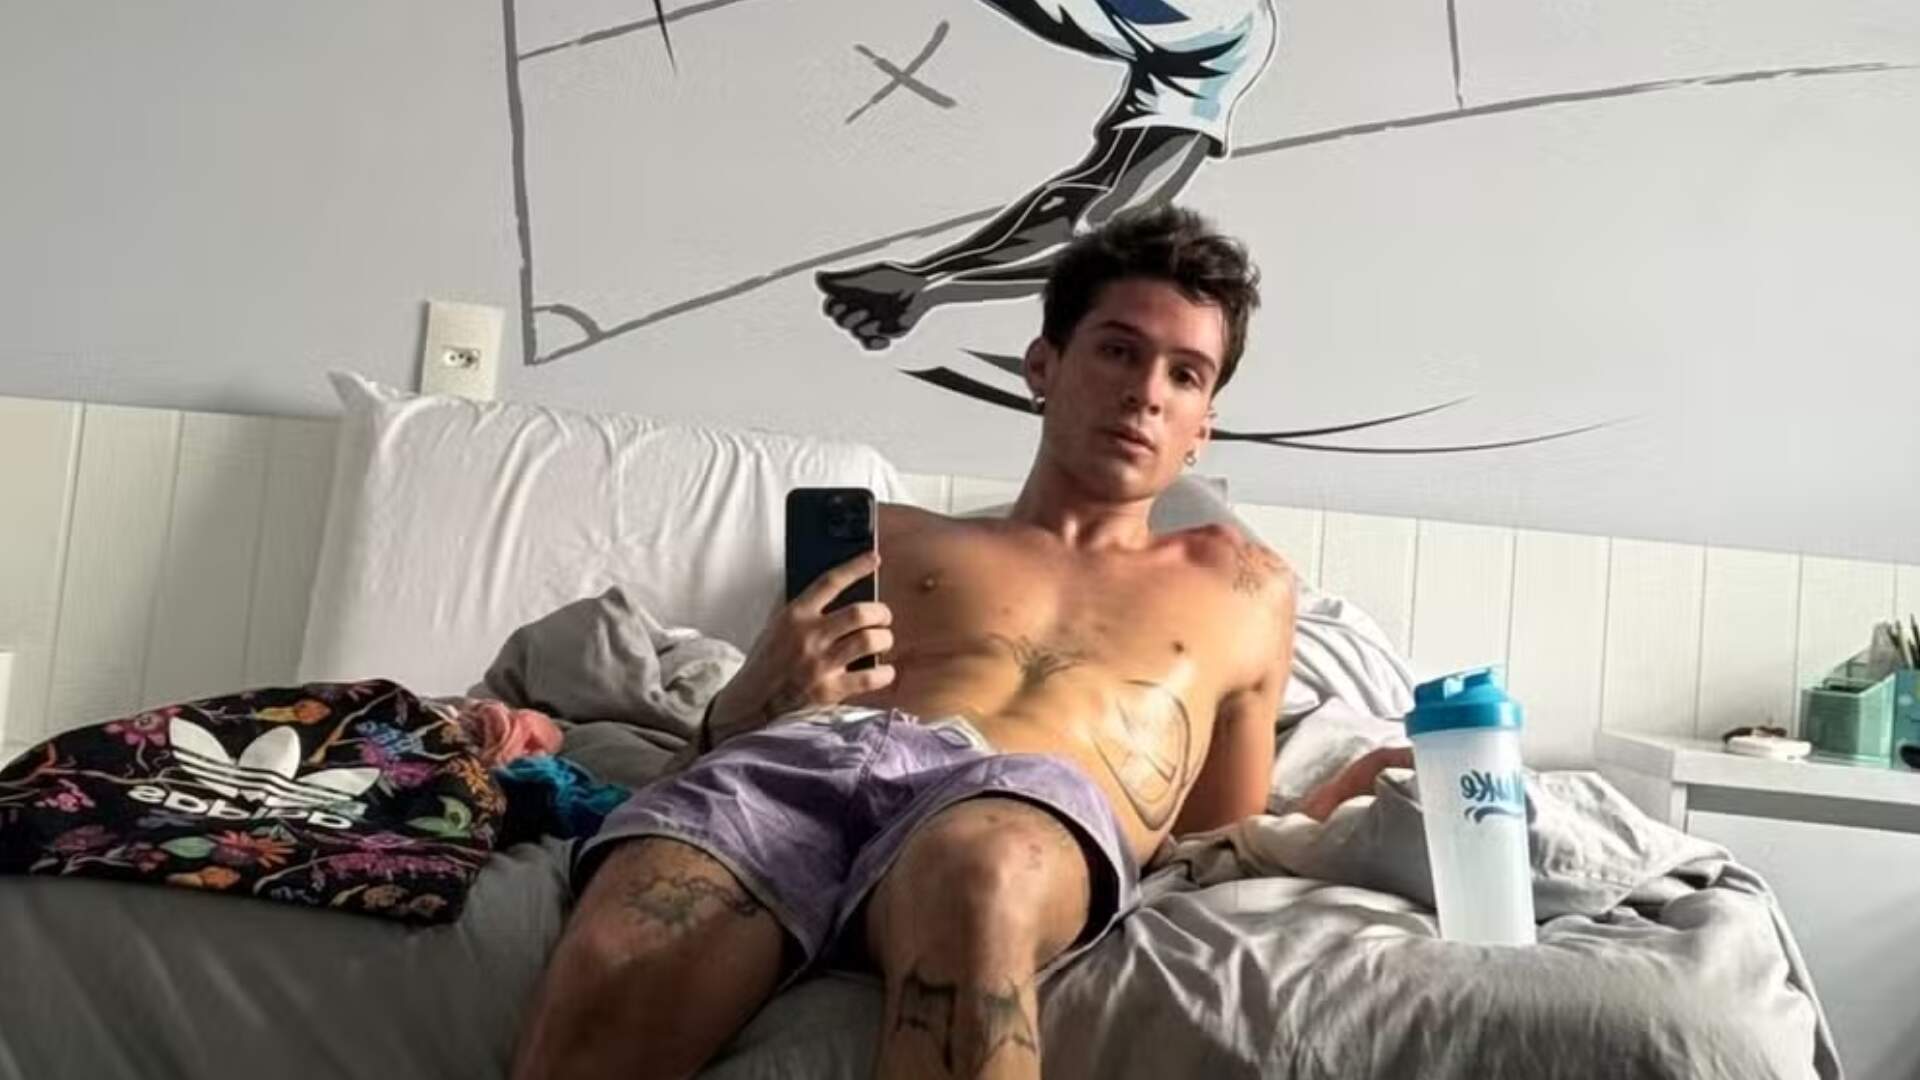 João Guilherme posta selfie e exibe abdômen trincado nas redes sociais - Metropolitana FM